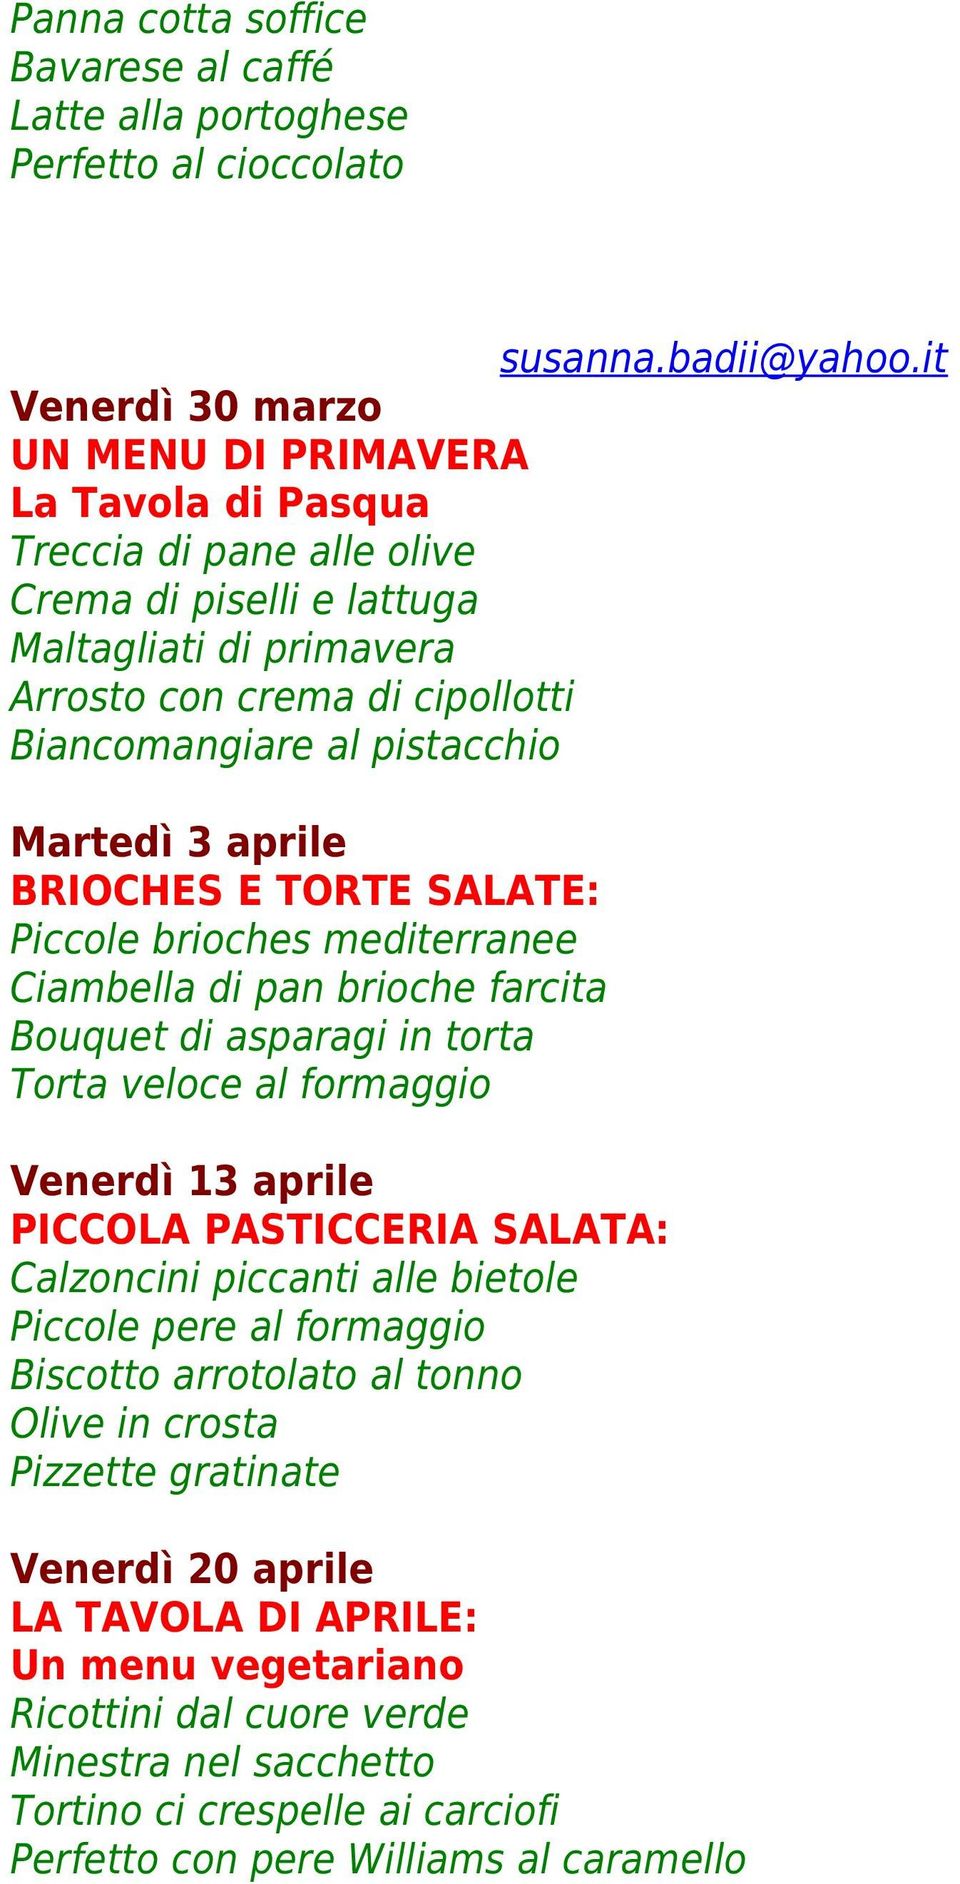 Bouquet di asparagi in torta Torta veloce al formaggio Venerdì 13 aprile PICCOLA PASTICCERIA SALATA: Calzoncini piccanti alle bietole Piccole pere al formaggio Biscotto arrotolato al tonno Olive in